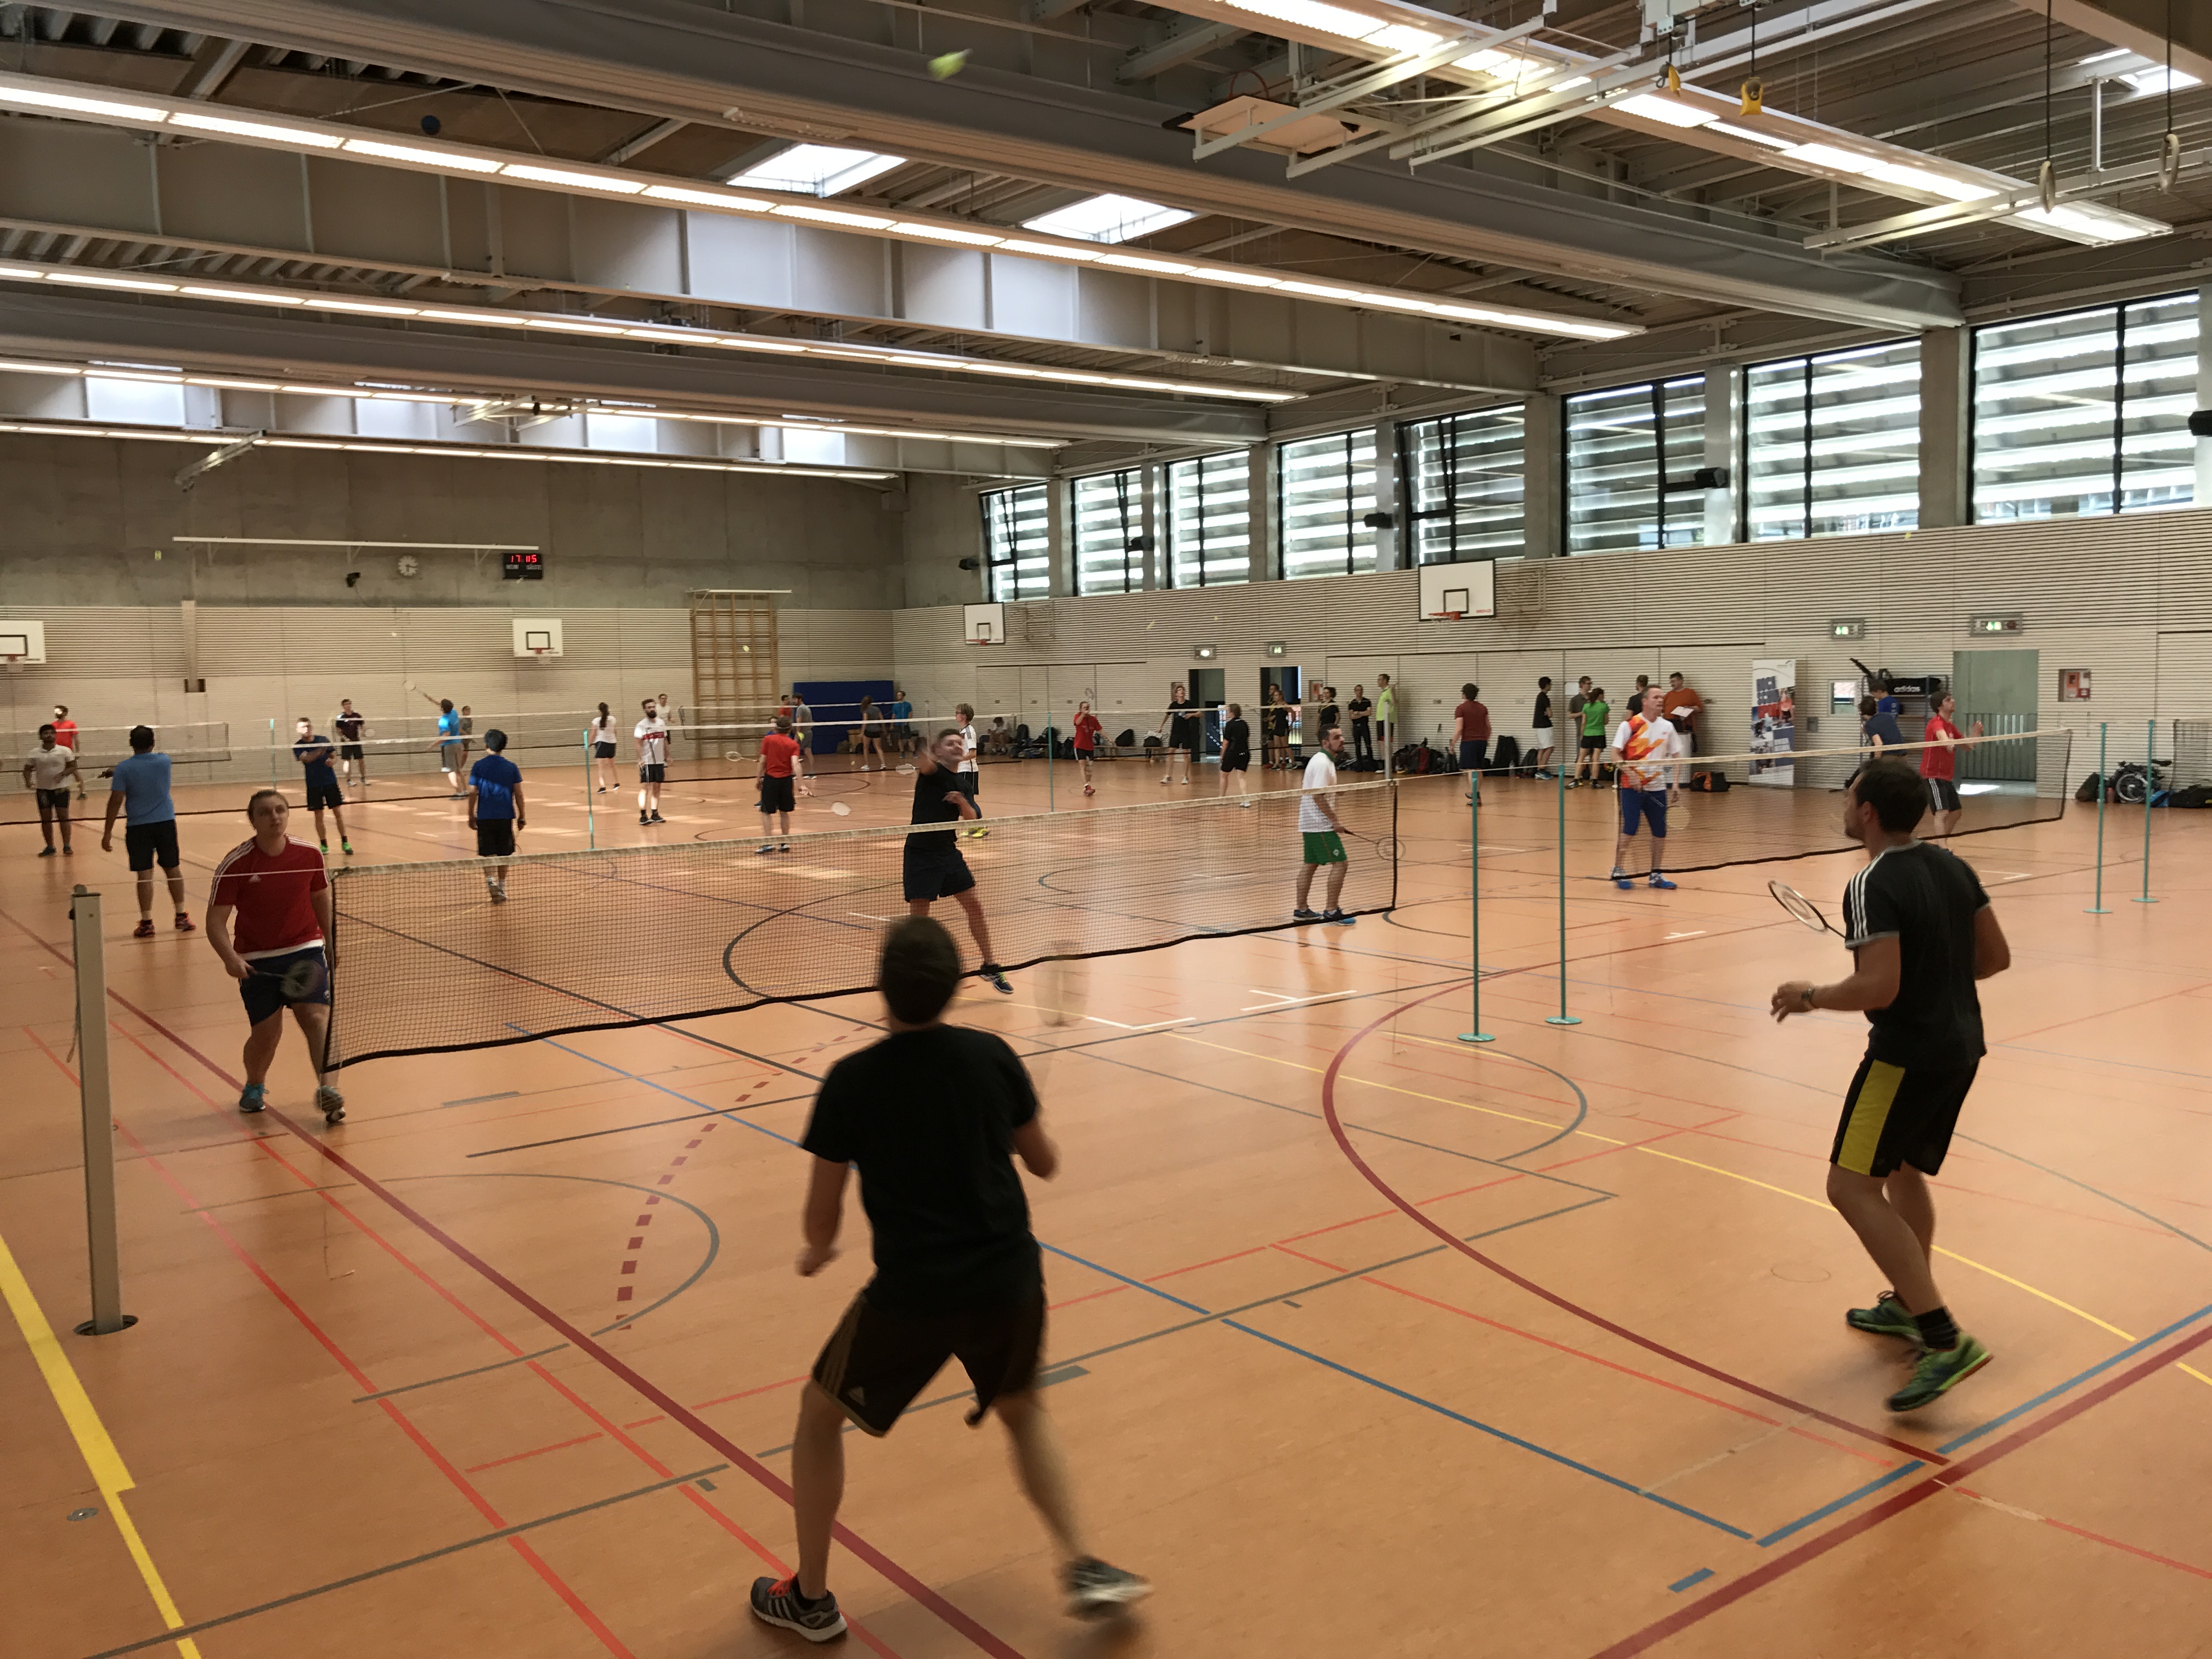 SE Abschlussturnier   Badminton   SoSe 2017   Spielszene